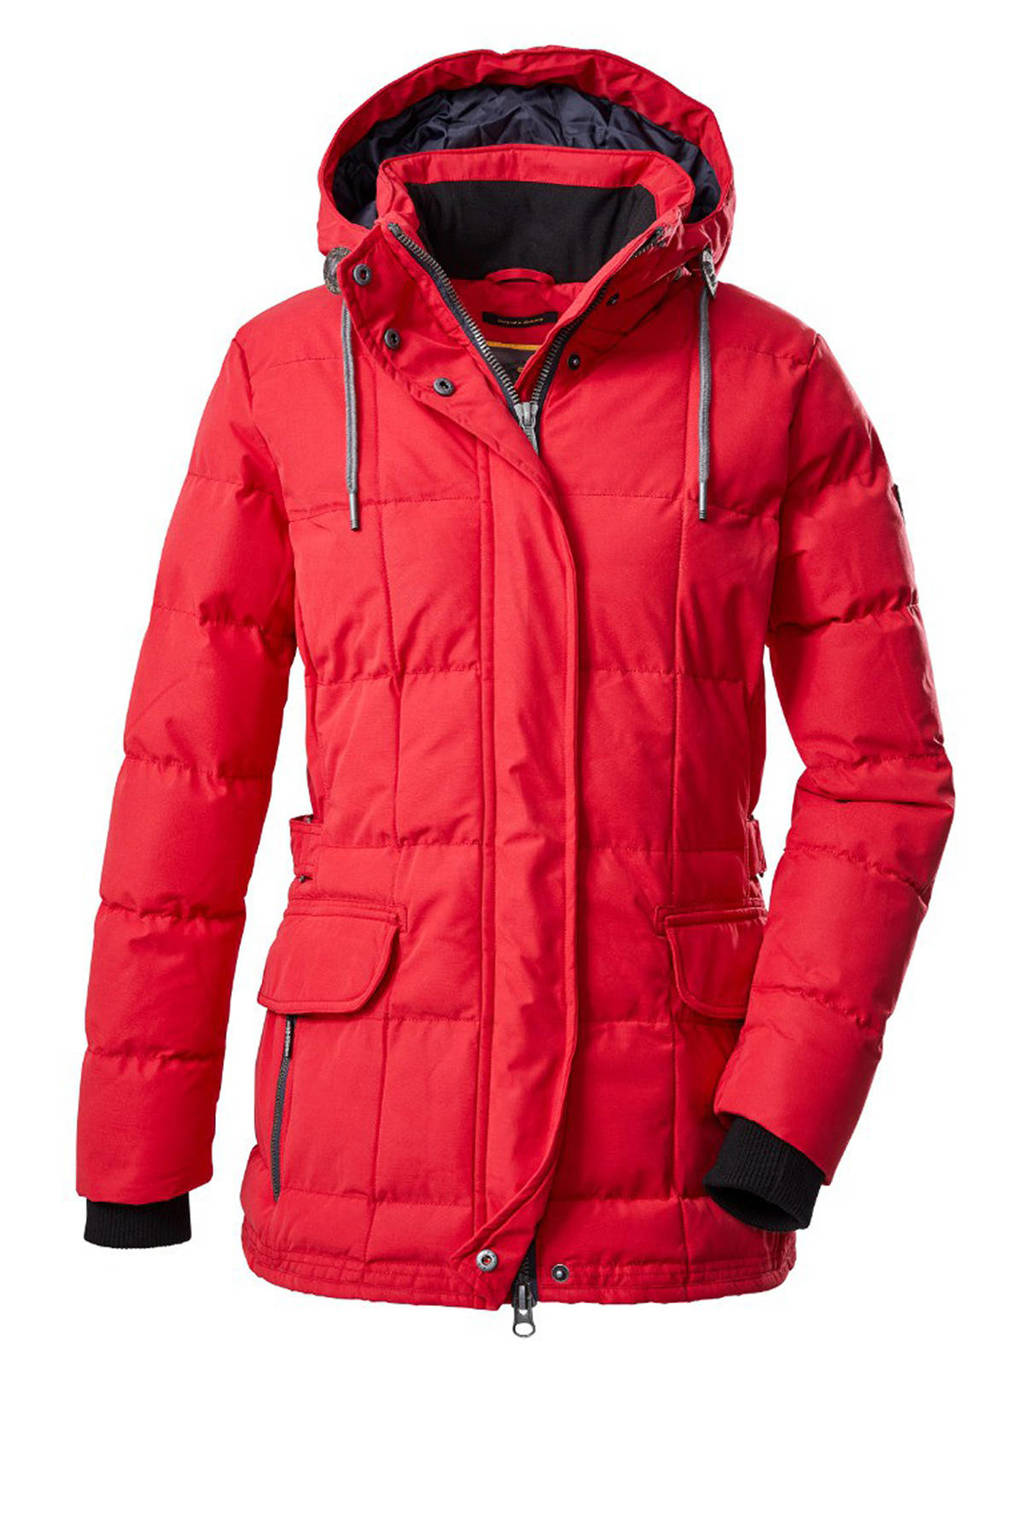 Rode dames Killtec outdoor jas van polyester met lange mouwen, capuchon en 2-way rits